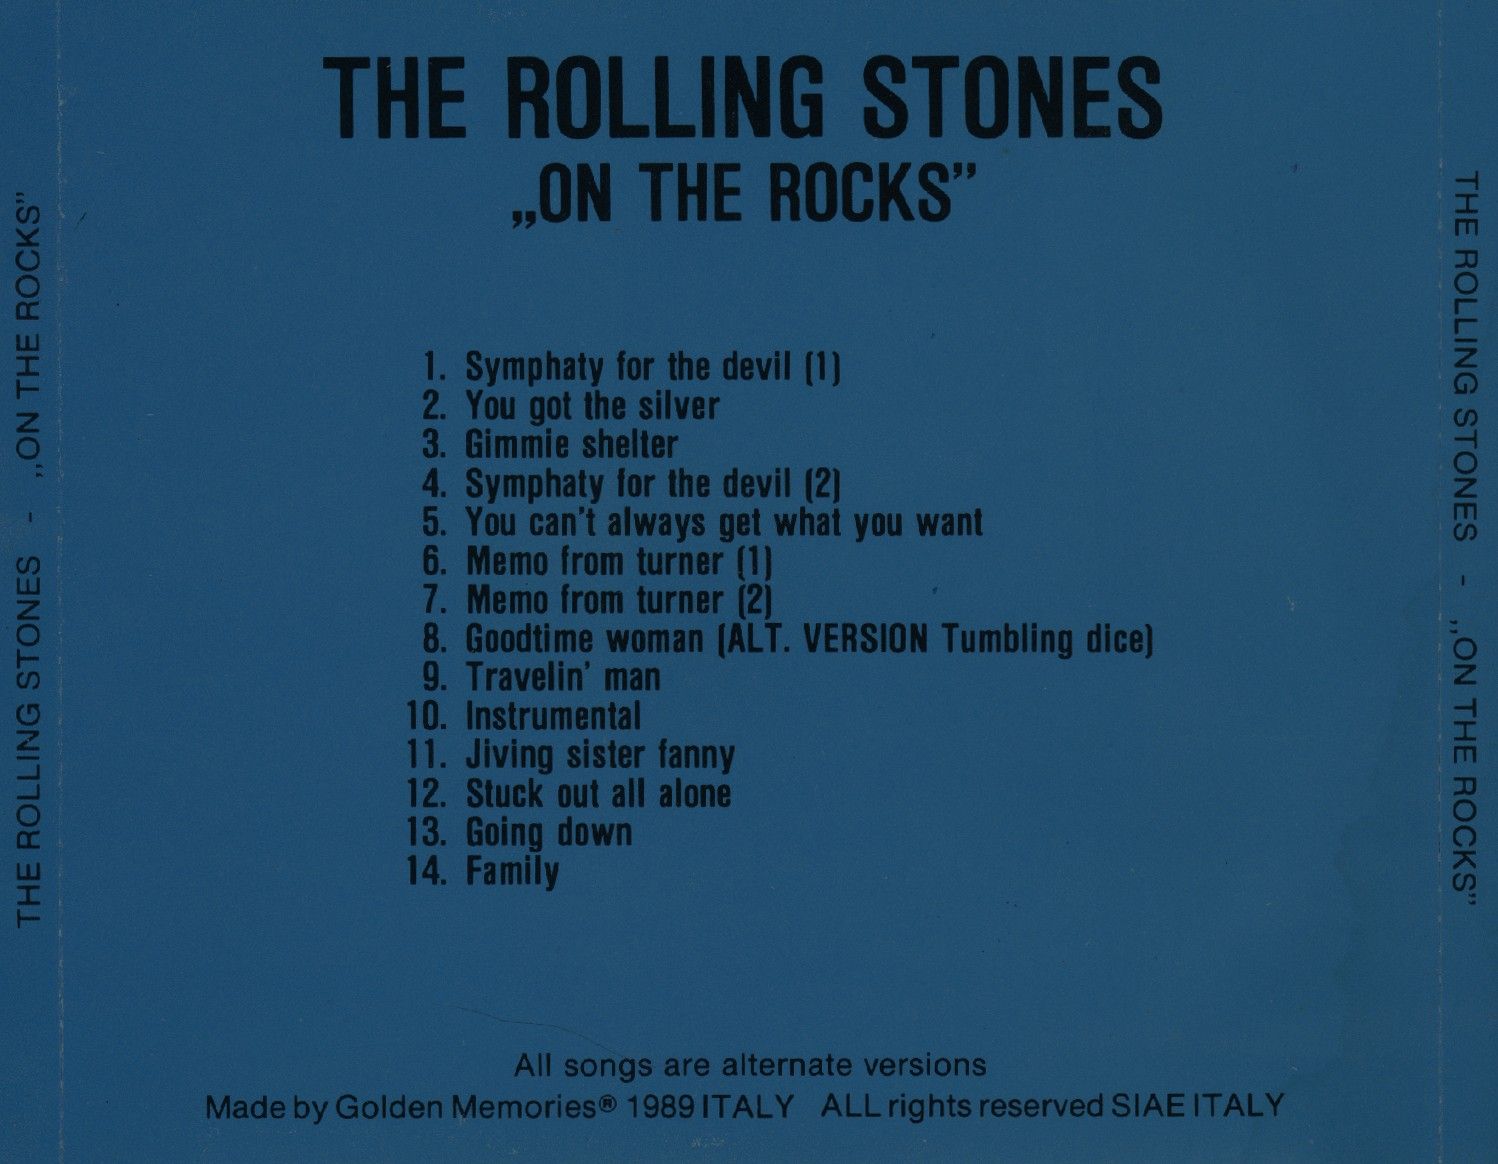 Stone me перевод. Rolling Stones перевод. Роллинг стоунз перевод. Stoned перевод.